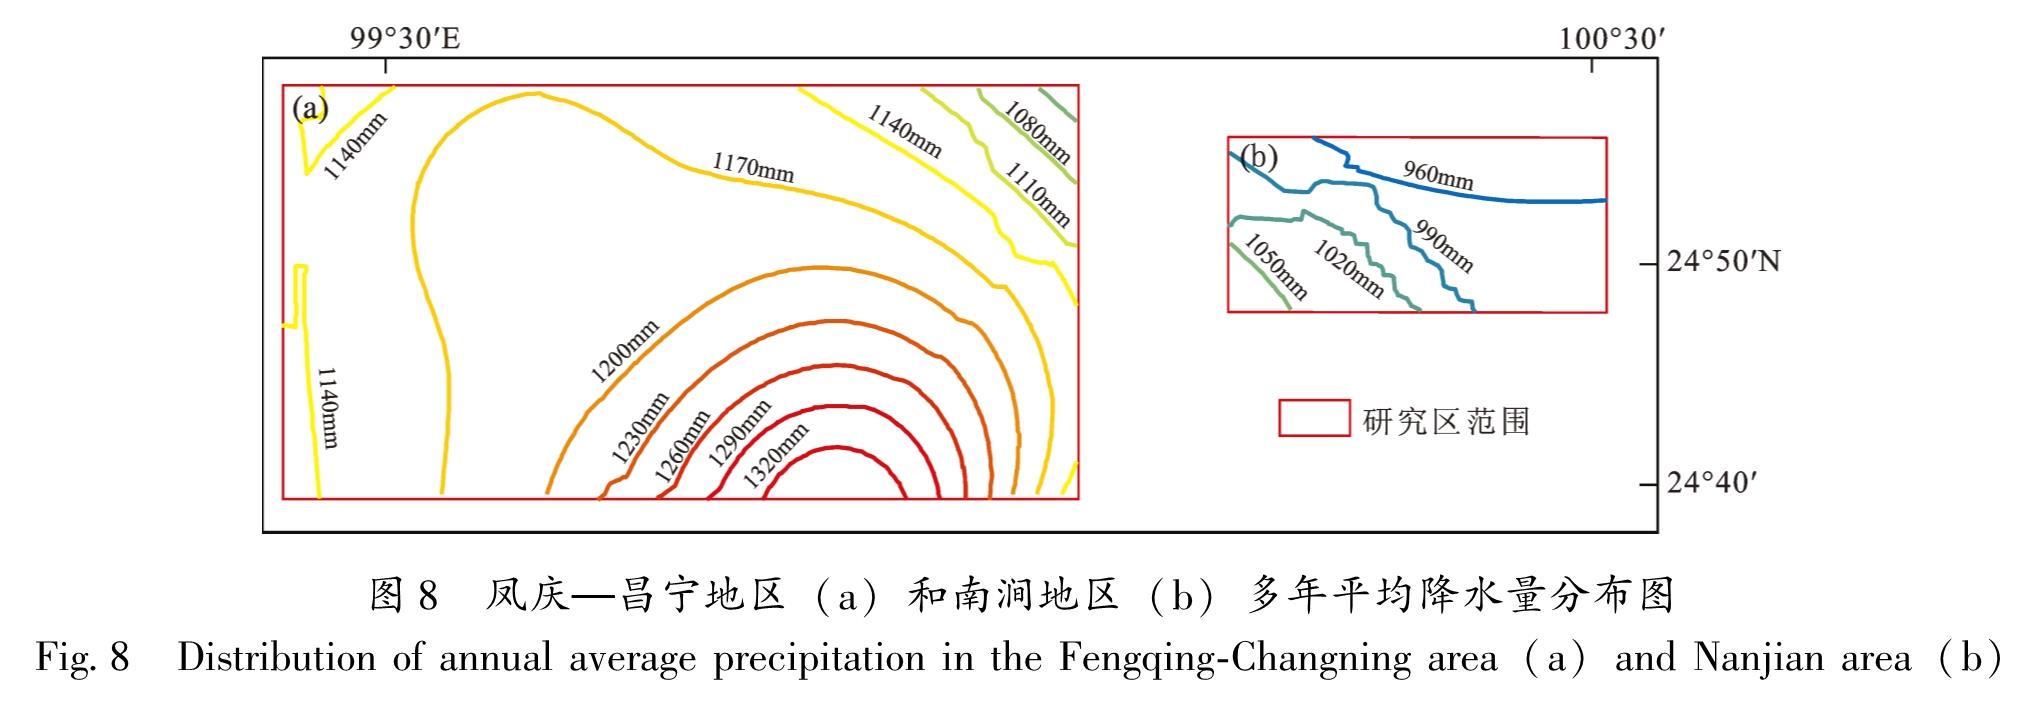 图8 凤庆—昌宁地区(a)和南涧地区(b)多年平均降水量分布图<br/>Fig.8 Distribution of annual average precipitation in the Fengqing-Changning area(a)and Nanjian area(b)